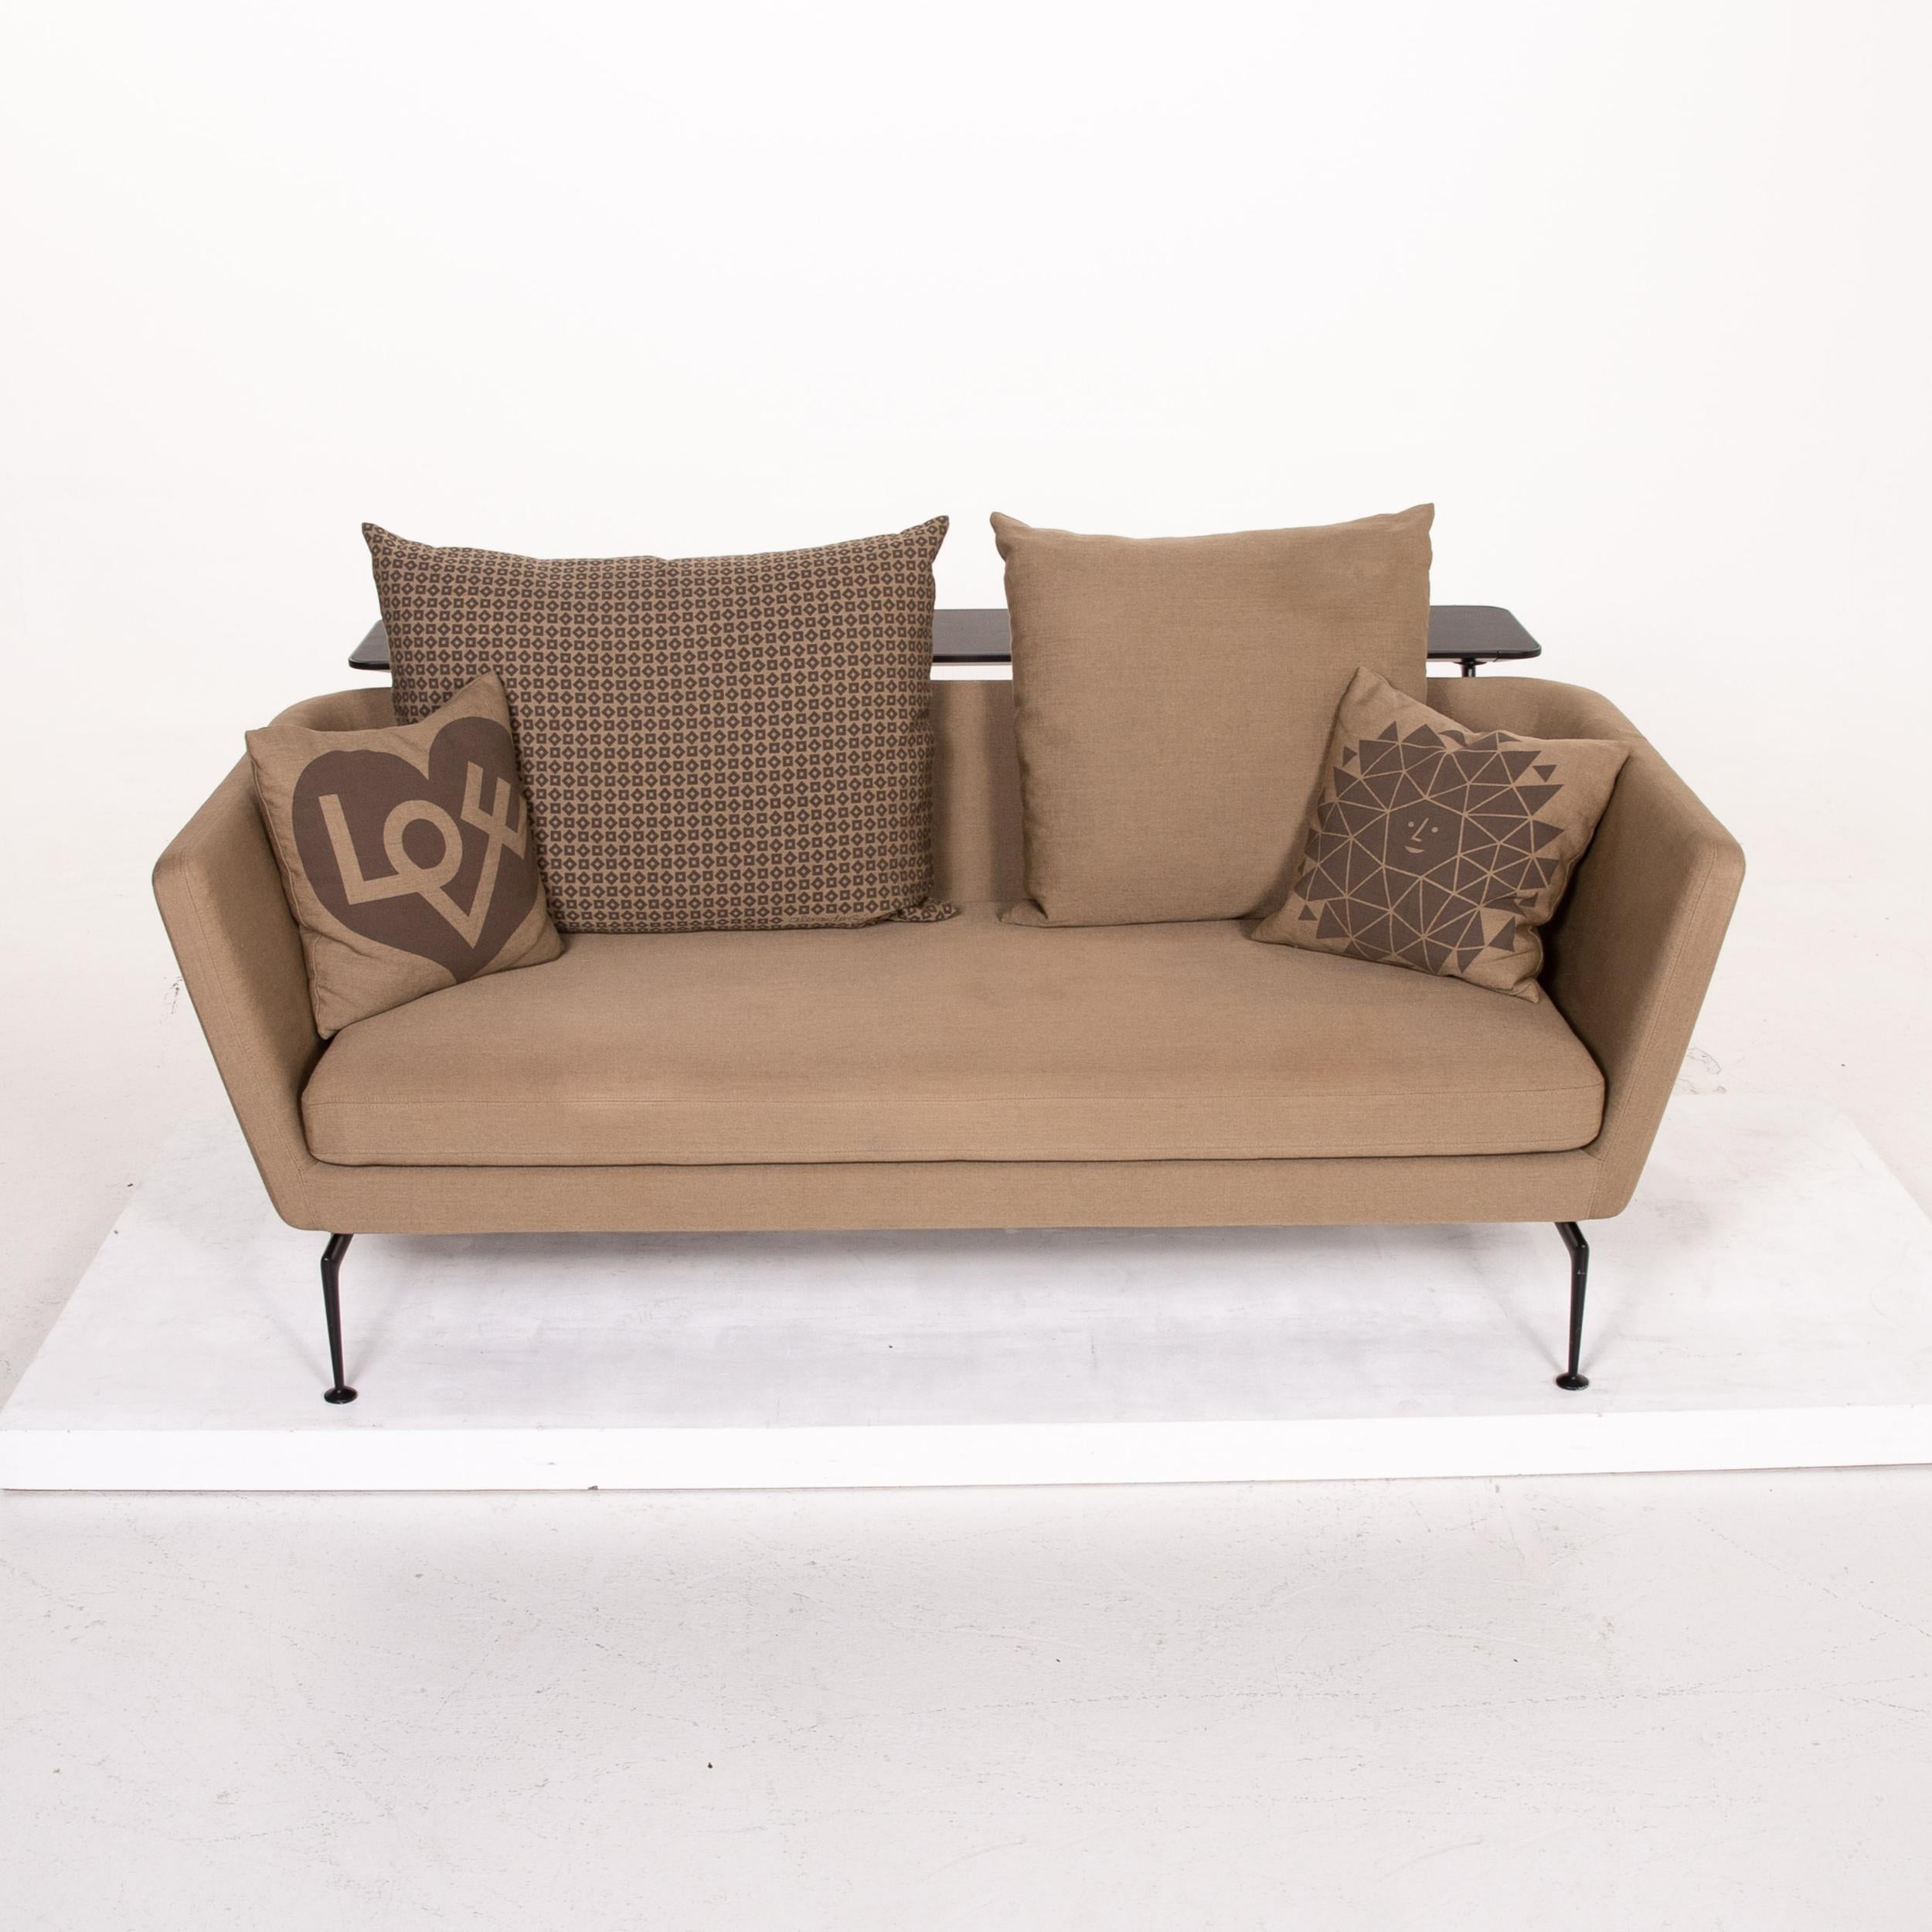 Vitra Suita Fabric Sofa Brown Light Brown Ocher Two-Seat Antonio Citterio In Good Condition For Sale In Cologne, DE